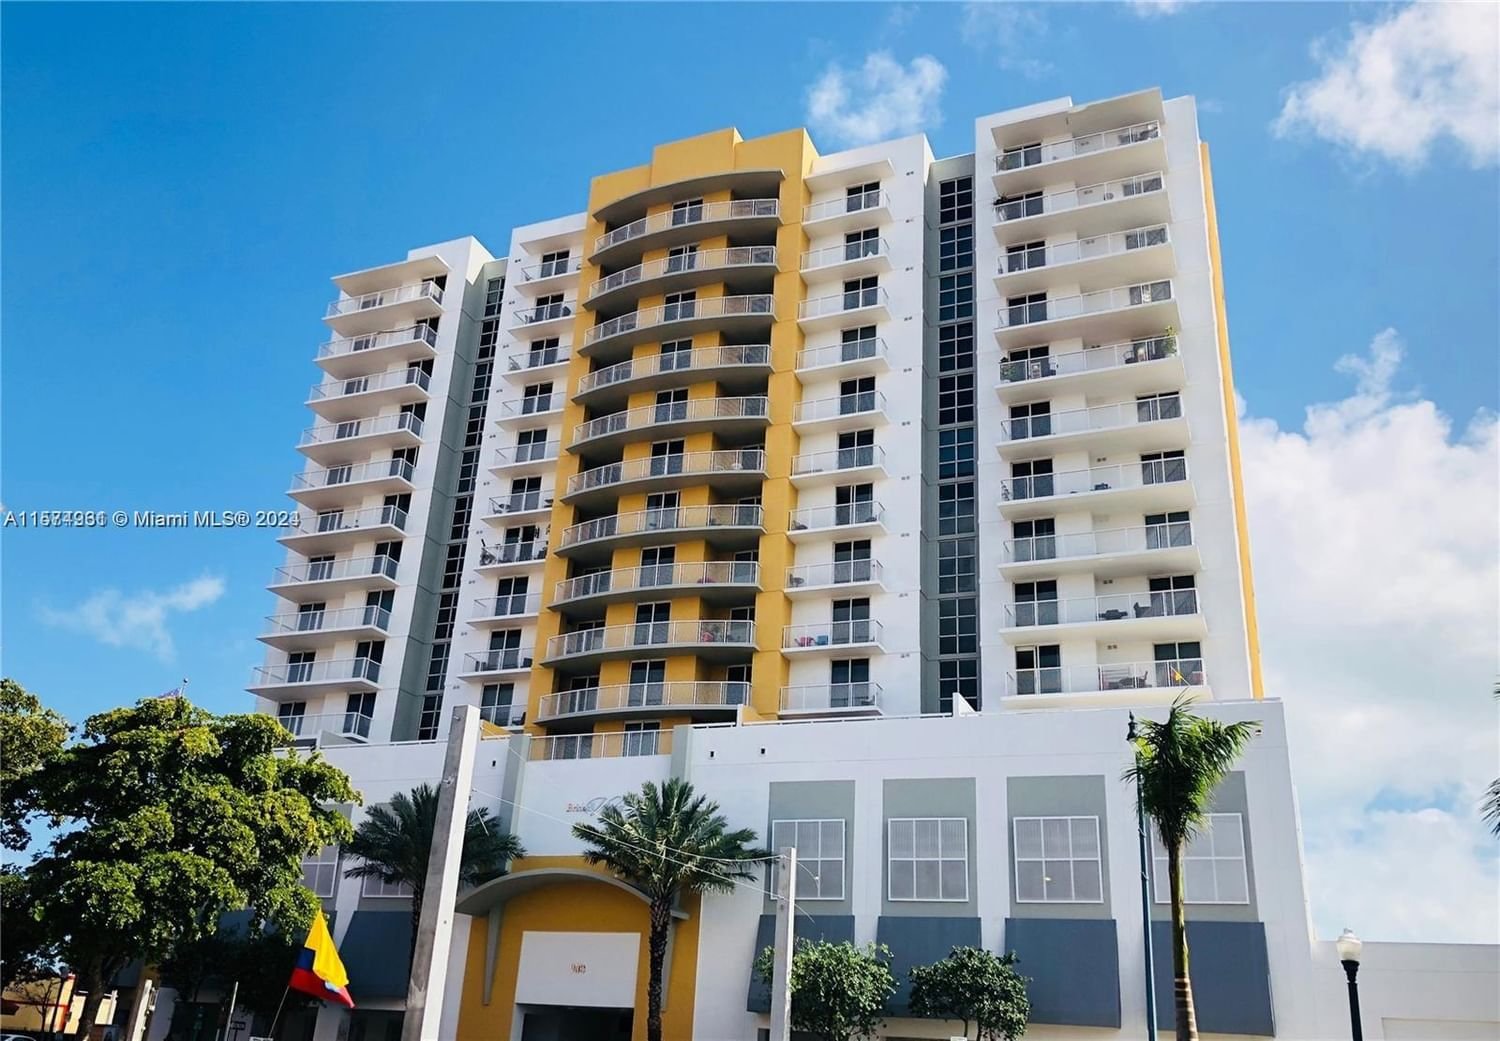 Real estate property located at 900 8th St #1008, Miami-Dade County, BRICKELL VISTA CONDO, Miami, FL